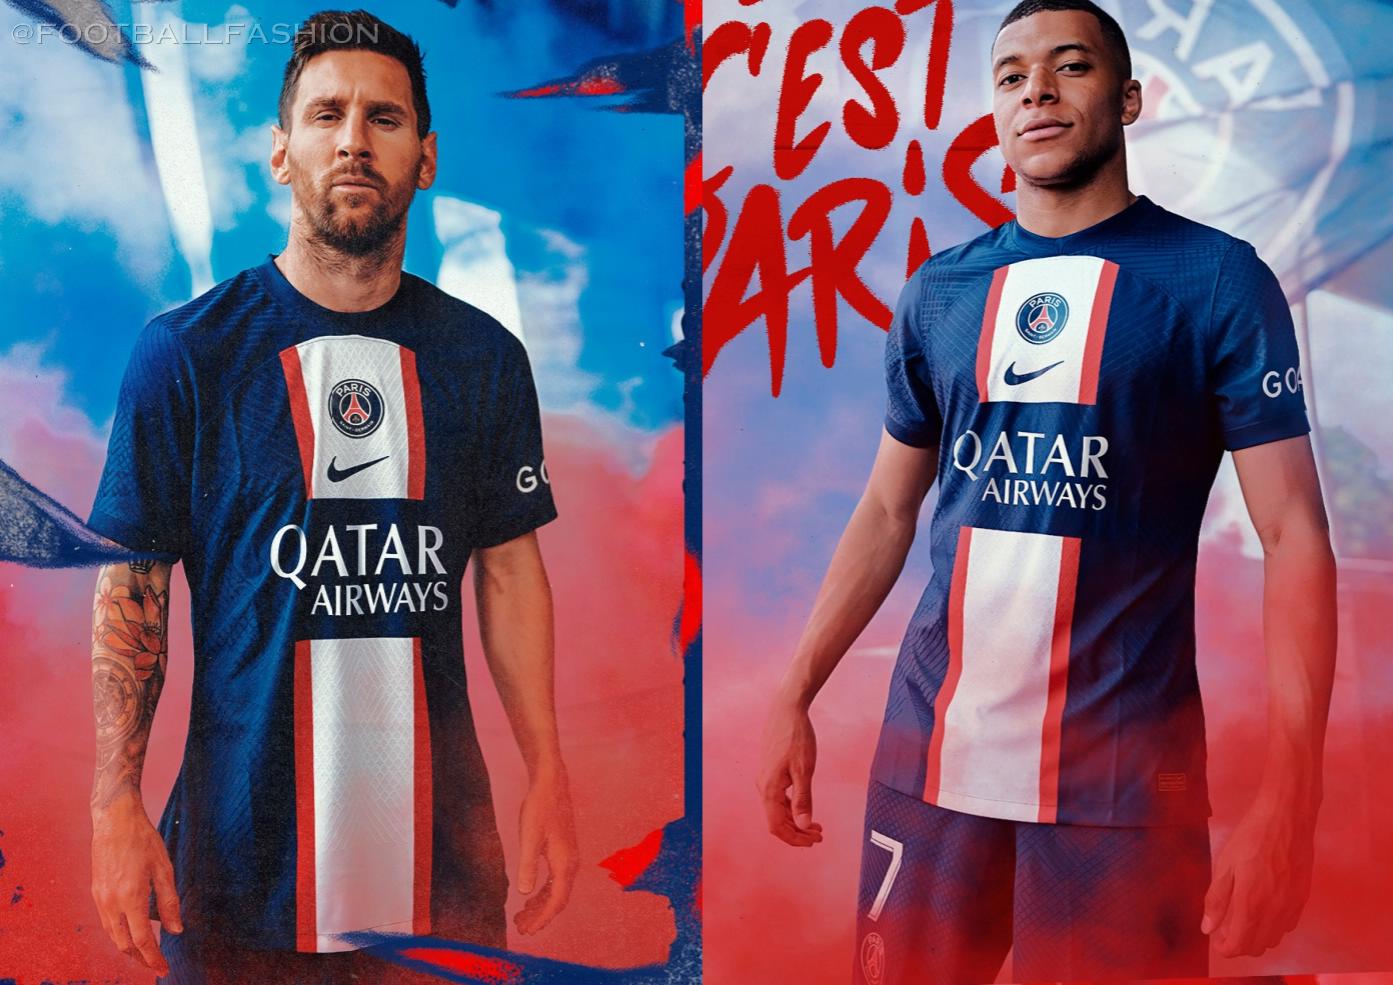 Paris Saint-Germain 2022/23 Nike Home Kit - FOOTBALL FASHION